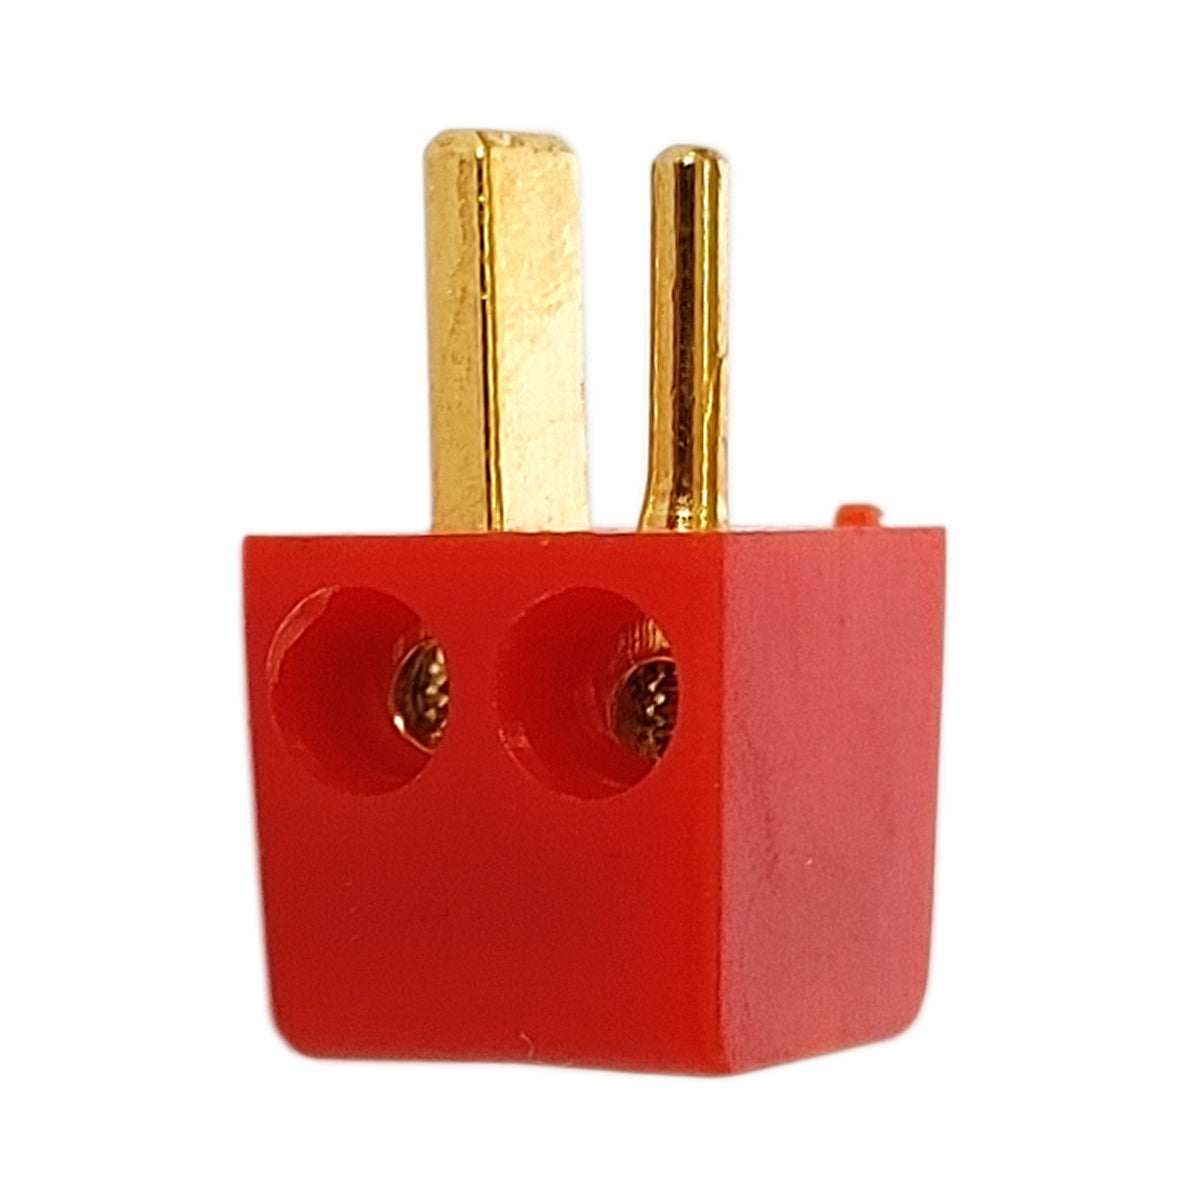 10x Lautsprecherstecker MiniDIN gewinkelt Rot Gold schraubbar Audio Boxenstecker